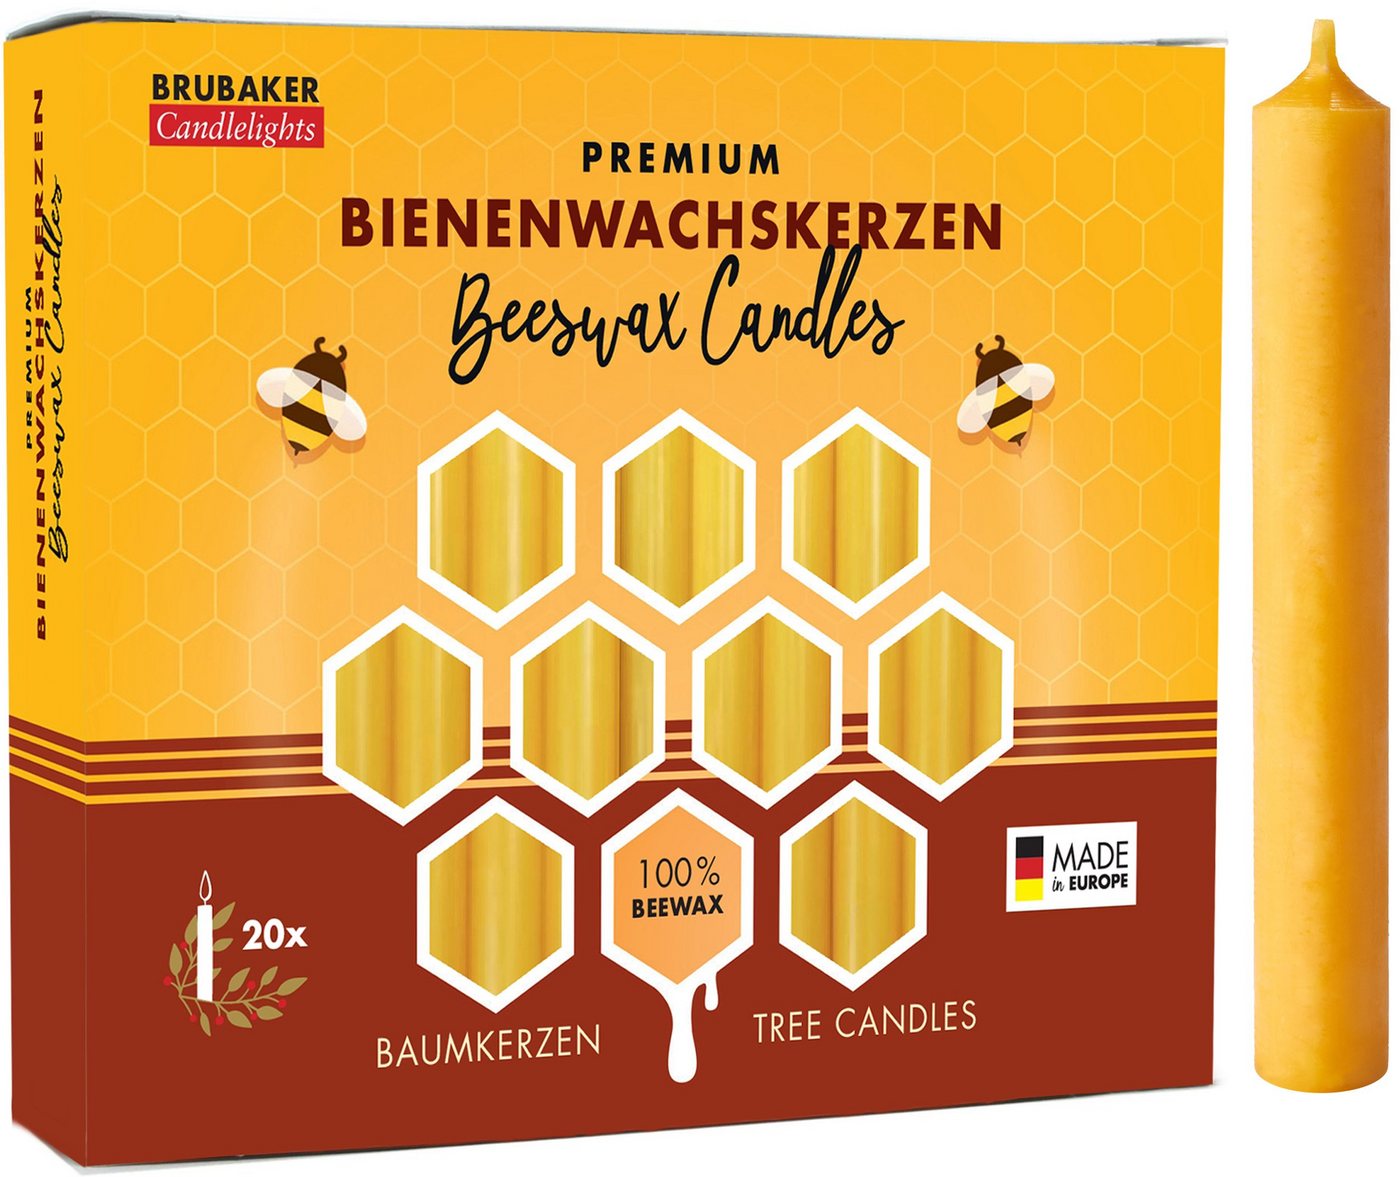 BRUBAKER Bienenwachskerze Honig-gelbe Baumkerzen aus echtem Bienenwachs (rauchfreie Weihnachtskerzen, Pyramidenkerzen mit festlichem Weihnachtsduft, 200-tlg), 10% oder 100% Bienenwachs, Mehrfachpackung Christbaumkerzen von BRUBAKER